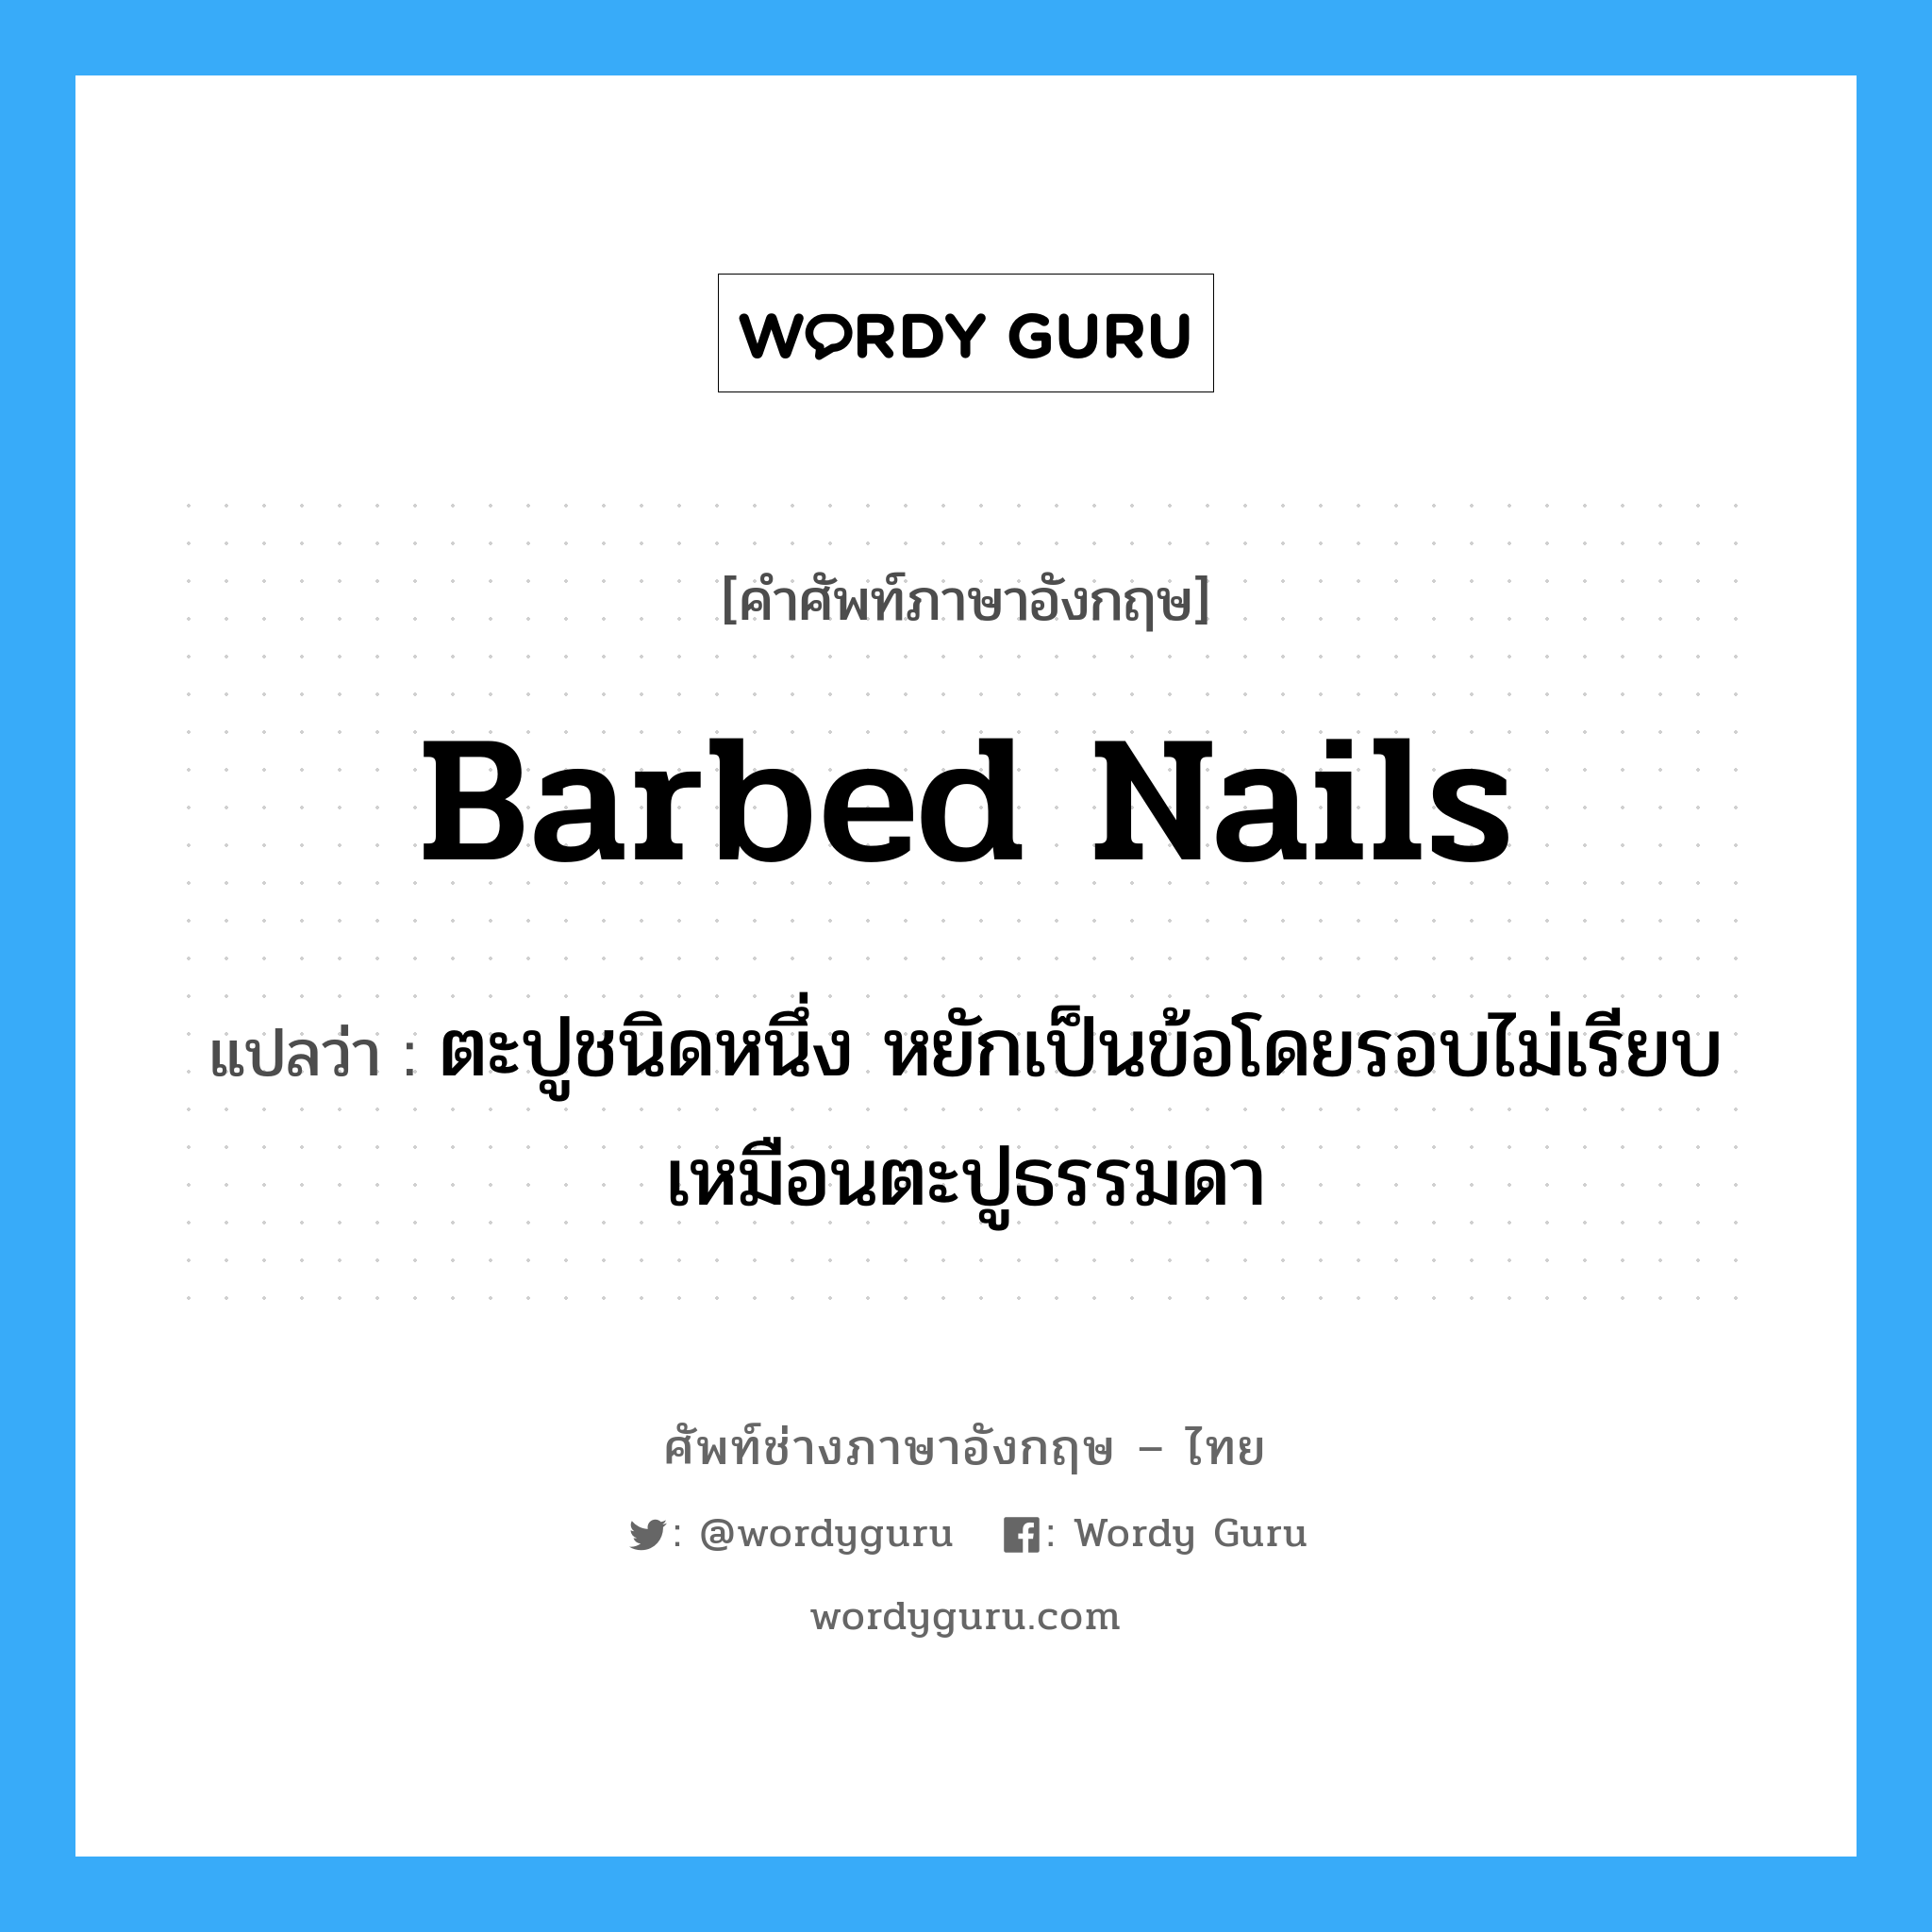 barbed nails แปลว่า?, คำศัพท์ช่างภาษาอังกฤษ - ไทย barbed nails คำศัพท์ภาษาอังกฤษ barbed nails แปลว่า ตะปูชนิดหนึ่ง หยักเป็นข้อโดยรอบไม่เรียบเหมือนตะปูธรรมดา